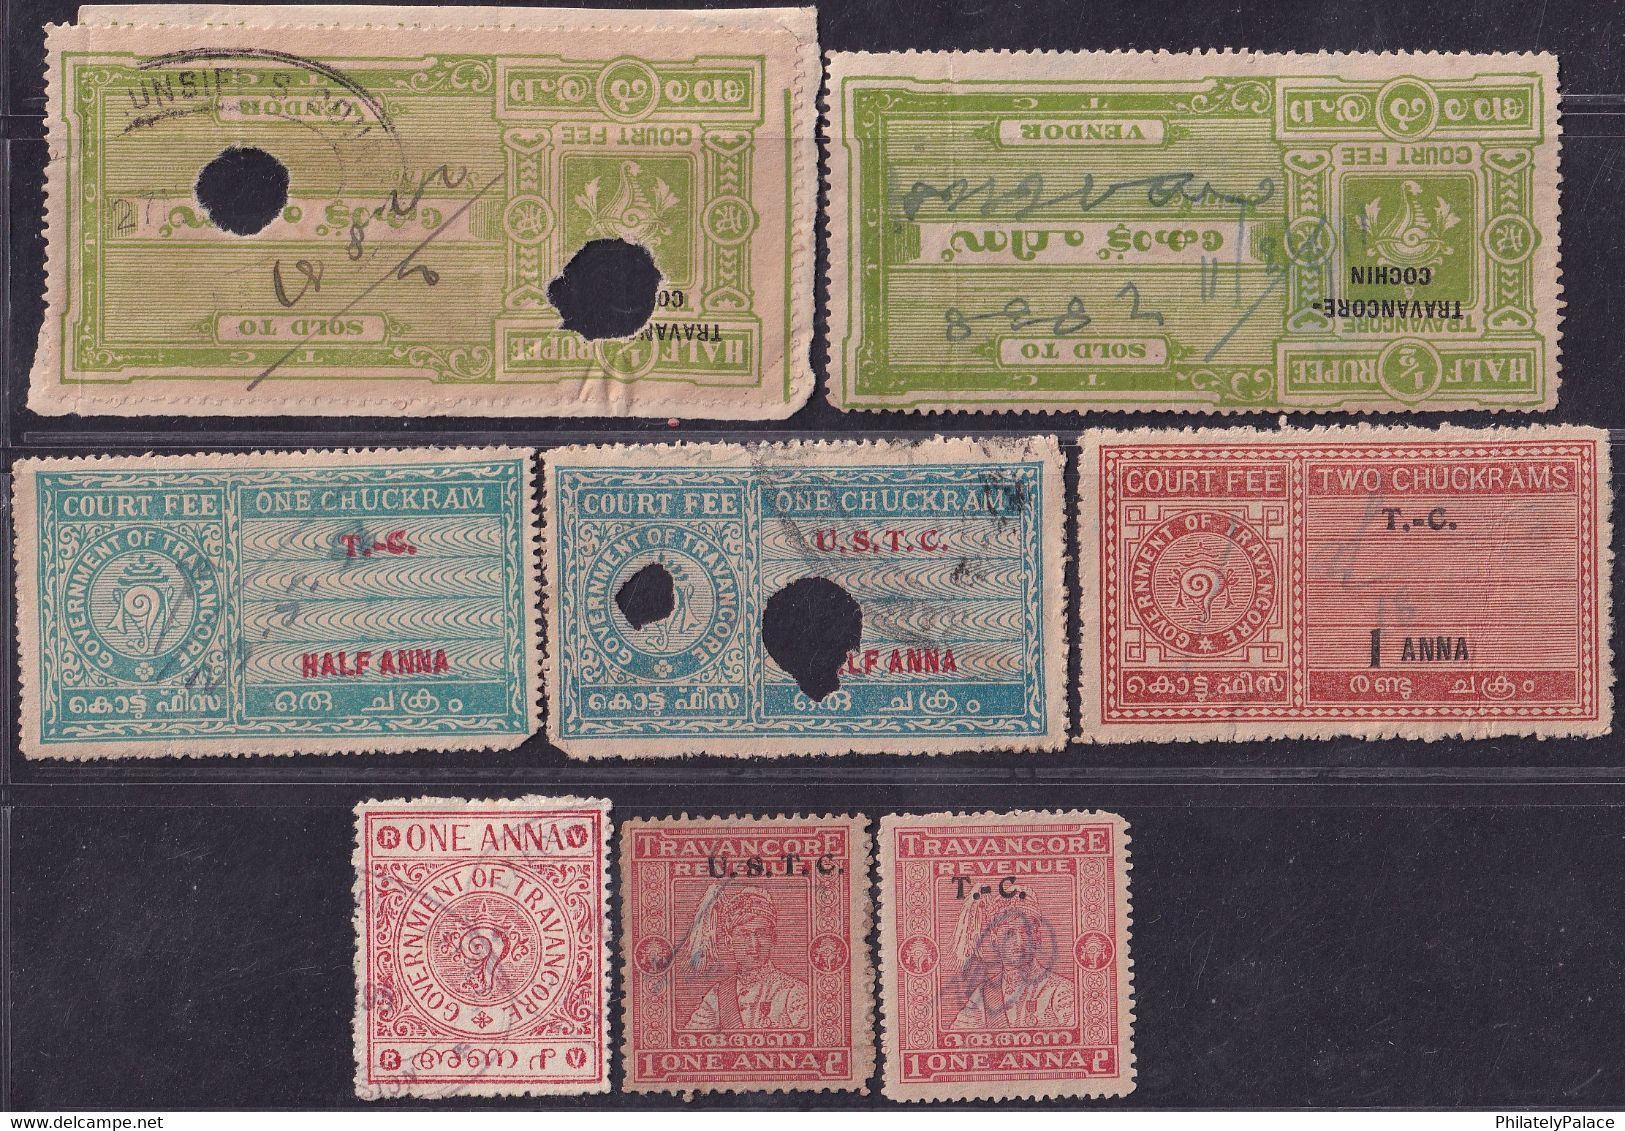 India Travancore Cochin State Court Fee & Revenue Stamps (8) (**) Inde Indien - Travancore-Cochin